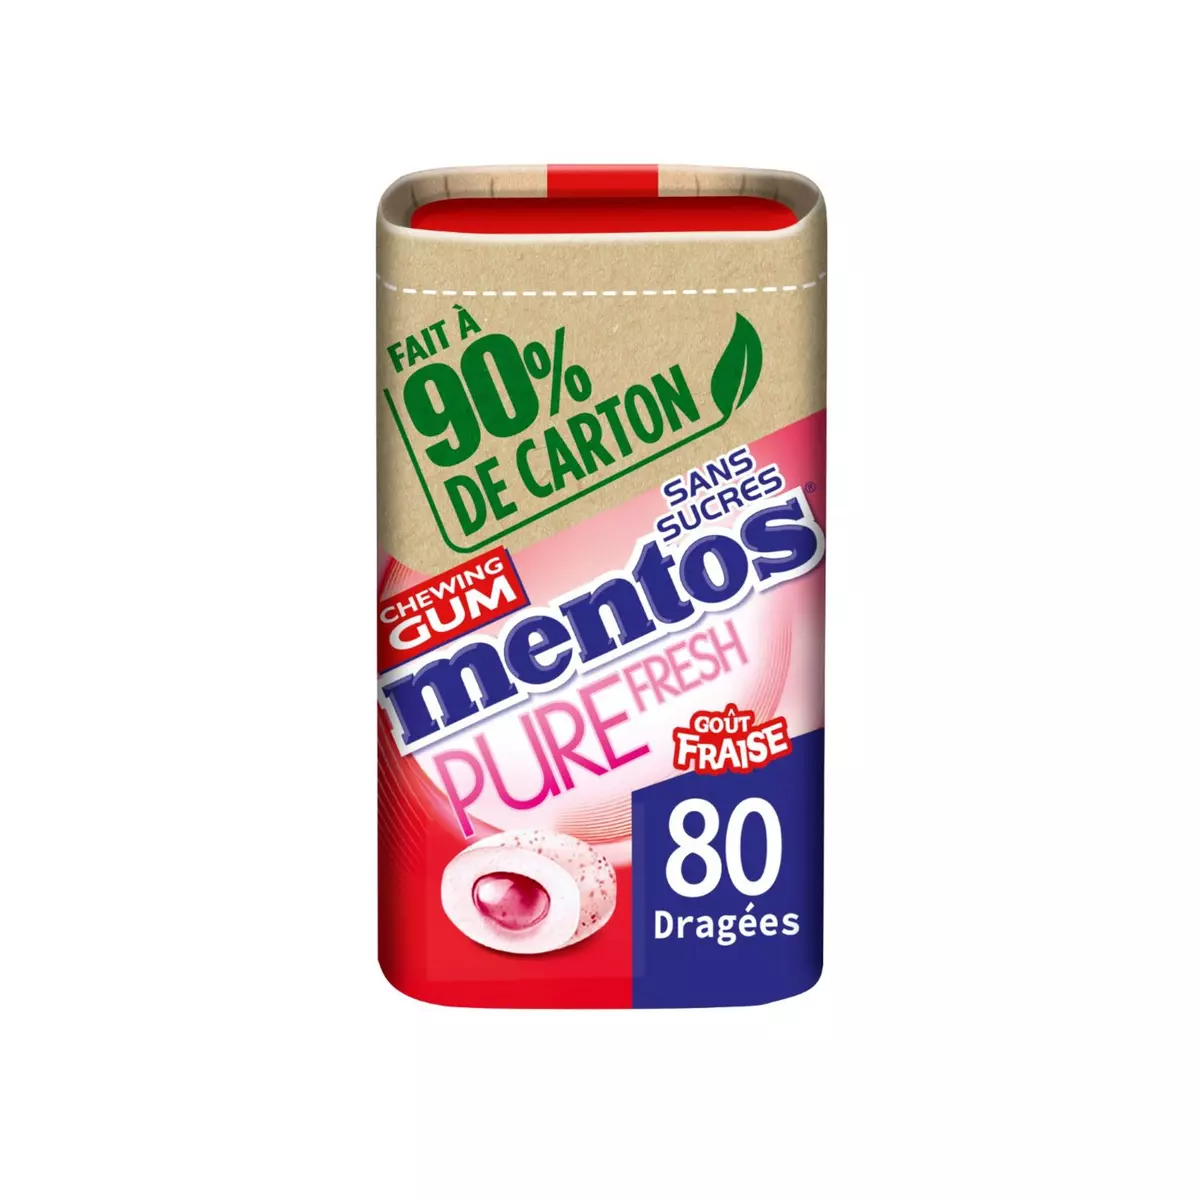 MENTOS Pure fresh Box chewing-gums sans sucres fraise 80 dragées 160g